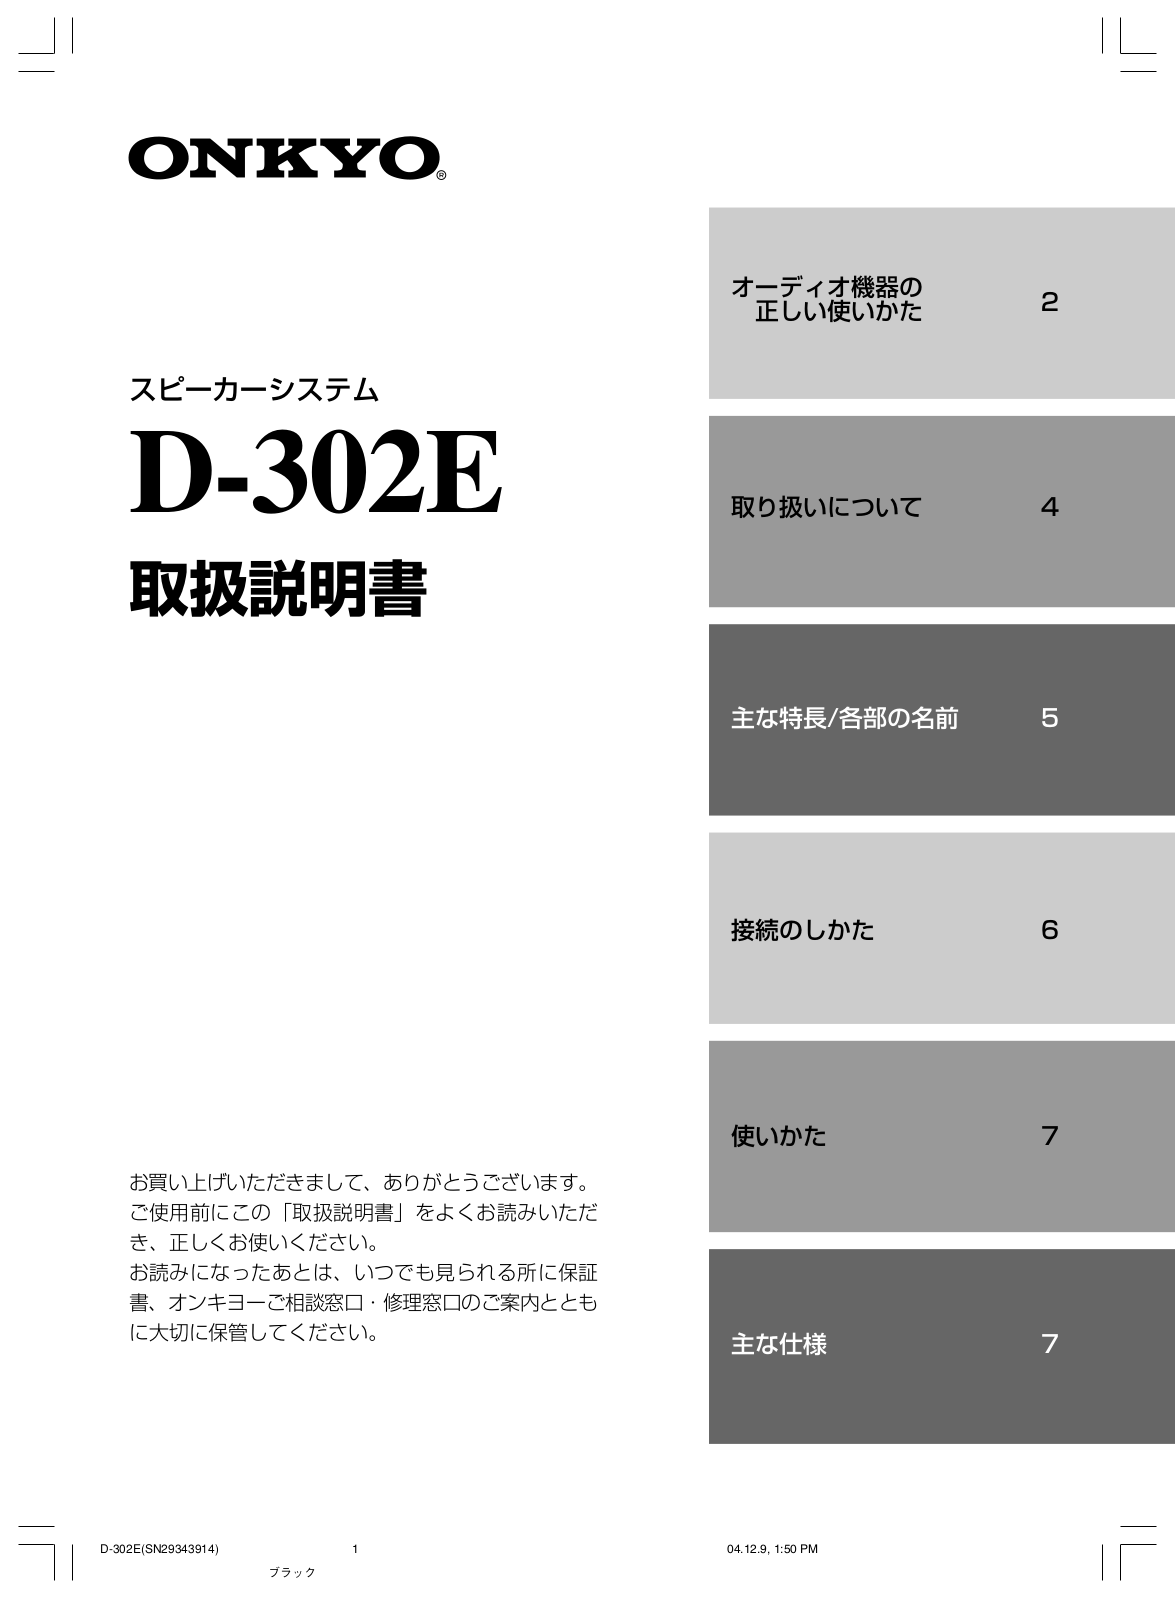 Onkyo d-302e User Manual